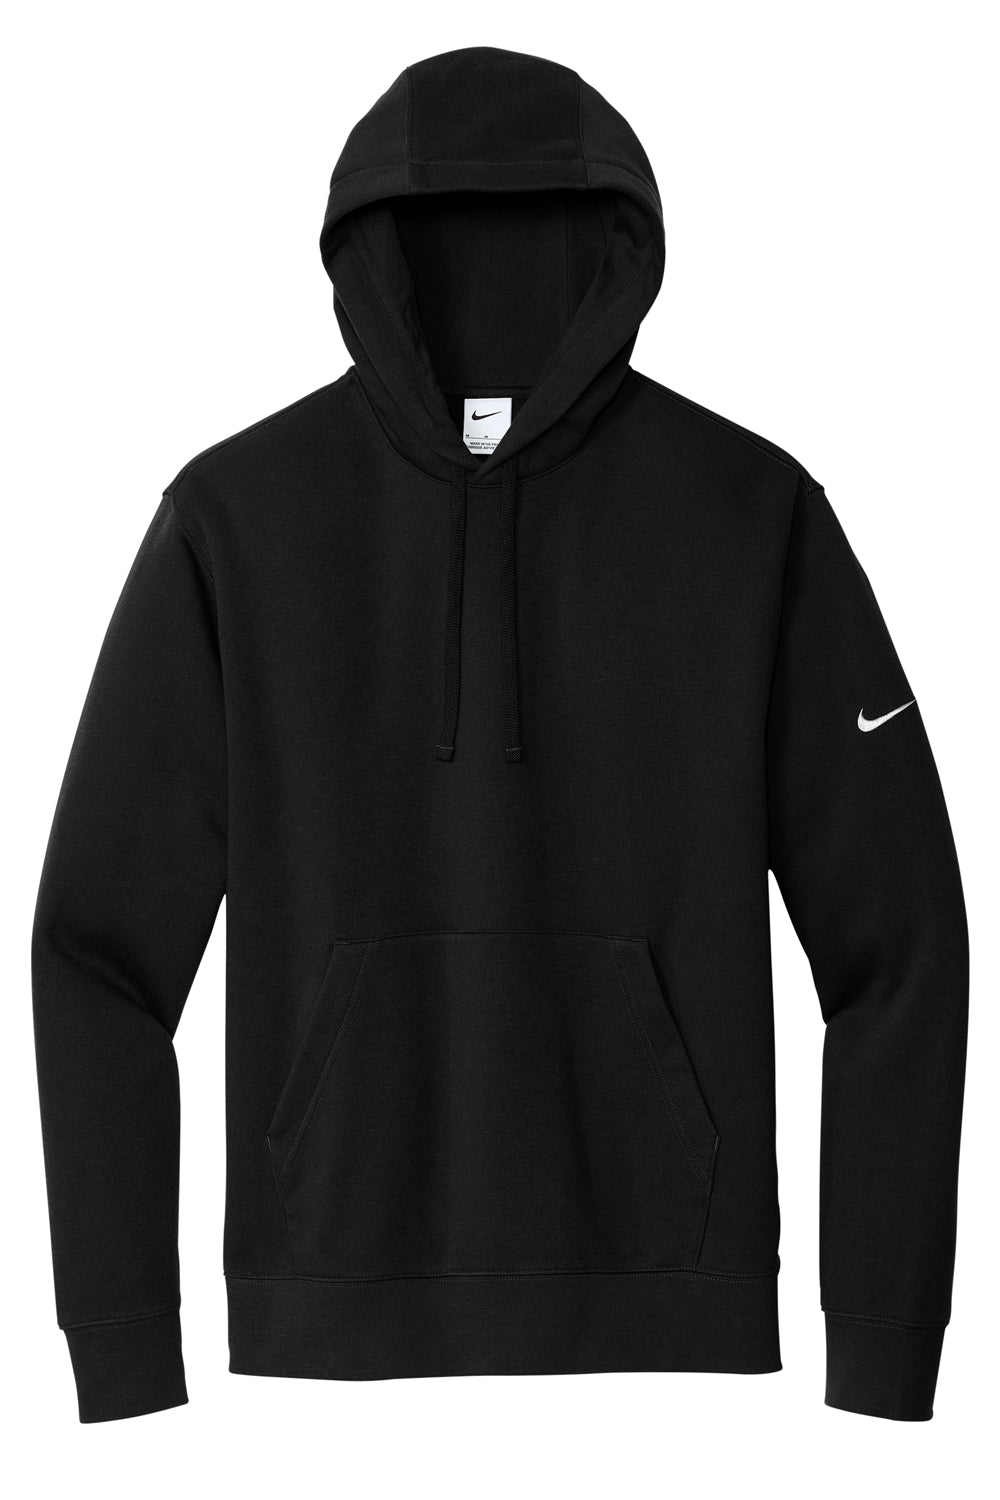 Nike NKDR1499 Mens Club Fleece Hooded Sweatshirt Hoodie Black Flat Front